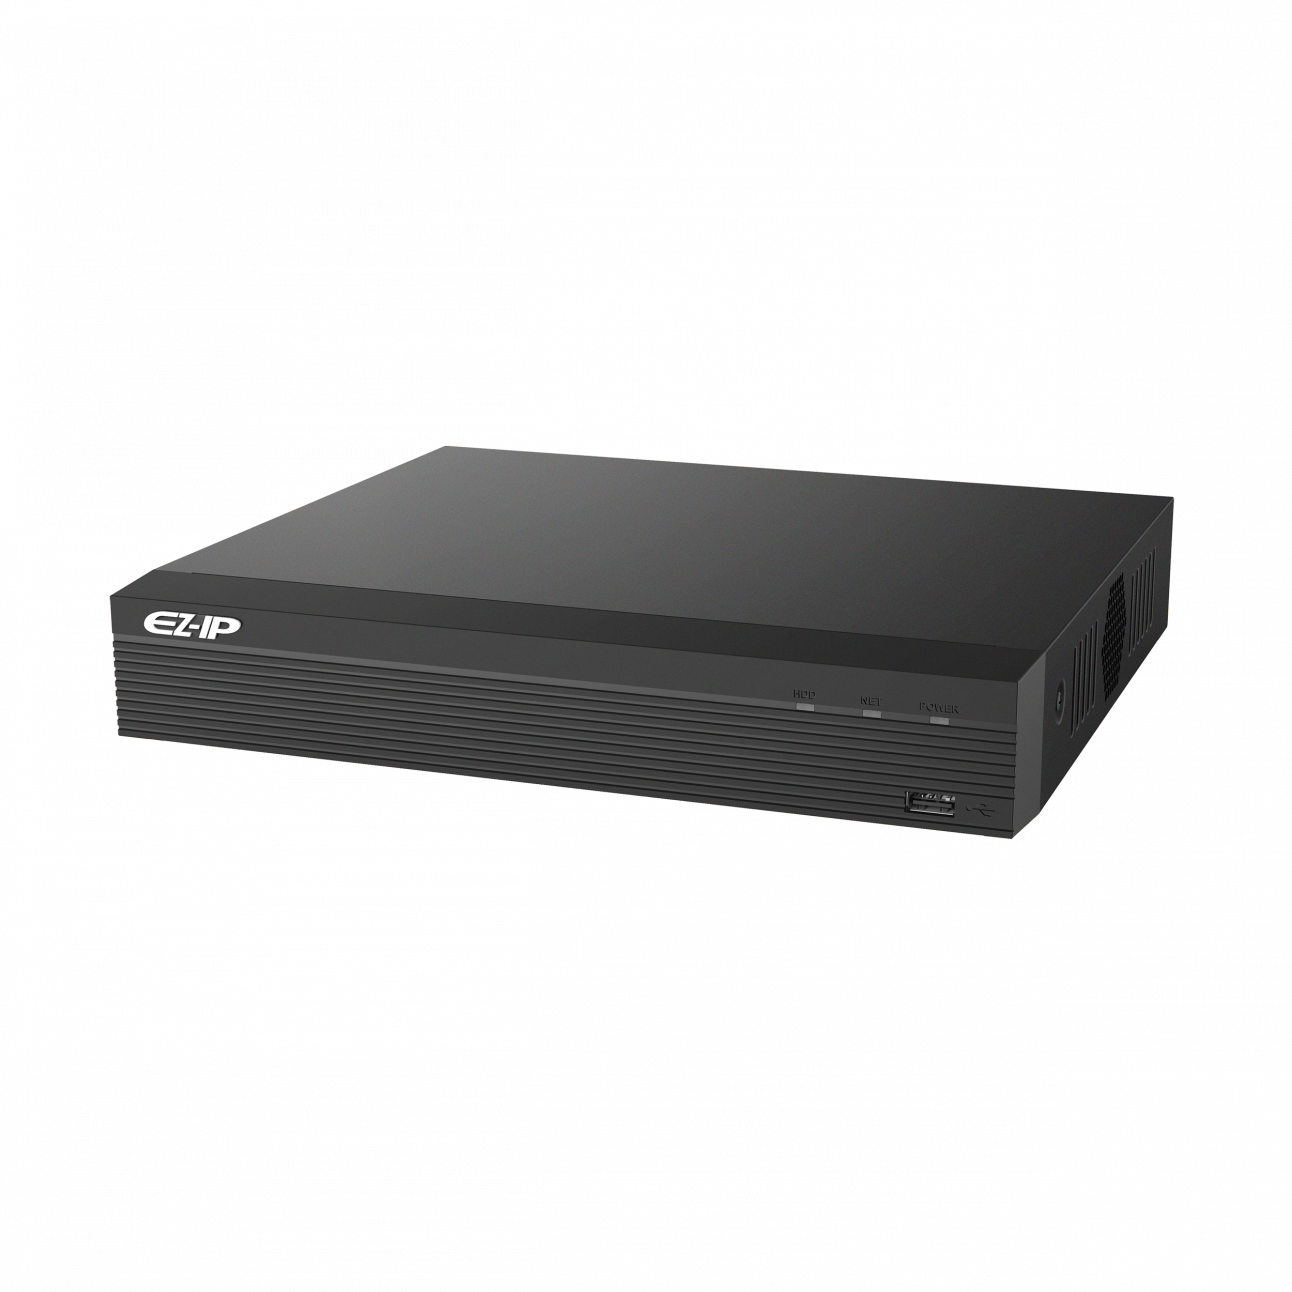 IP видеорегистратор Dahua EZ-NVR1B08HS 8-канальный, до 8Мп, 1HDD до 4Тб, HDMI, VGA, 2 порта USB 2.0, DC12В